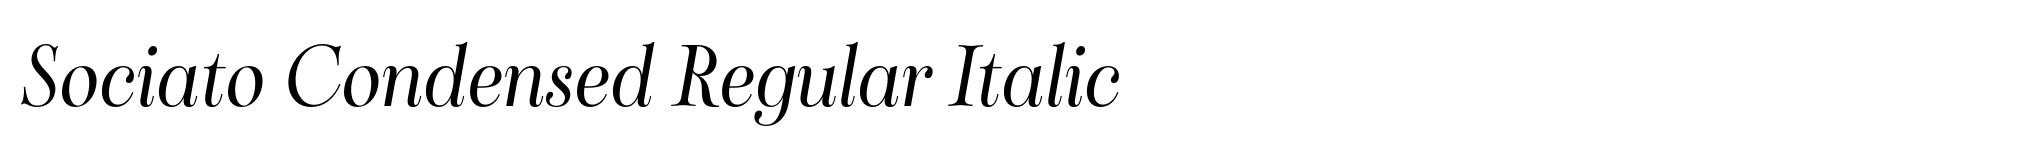 Sociato Condensed Regular Italic image